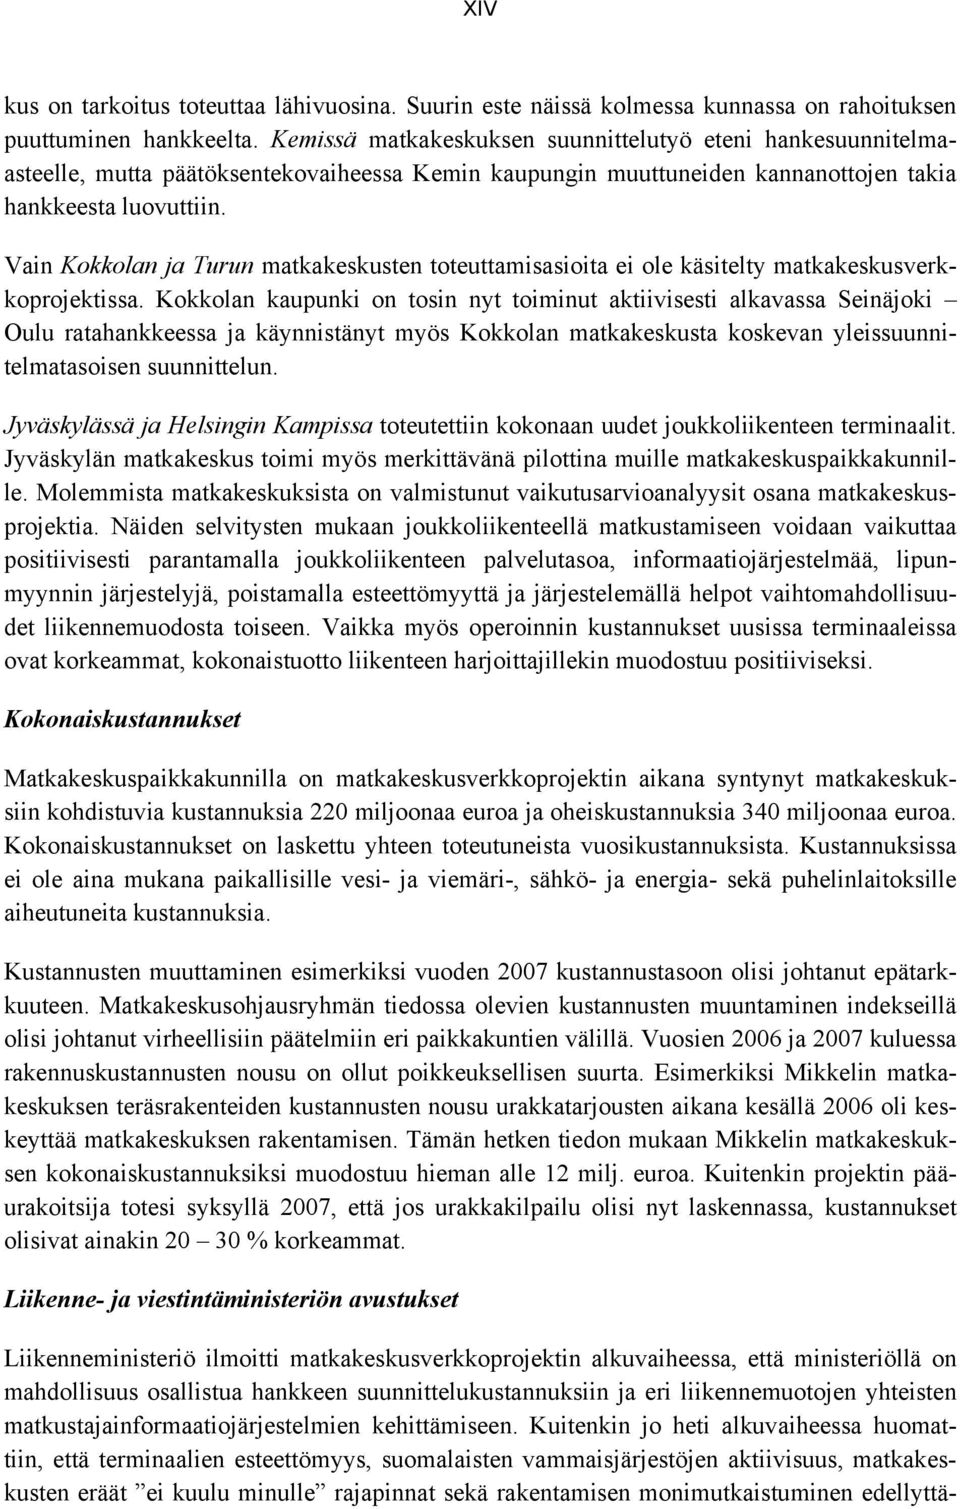 Vain Kokkolan ja Turun matkakeskusten toteuttamisasioita ei ole käsitelty matkakeskusverkkoprojektissa.